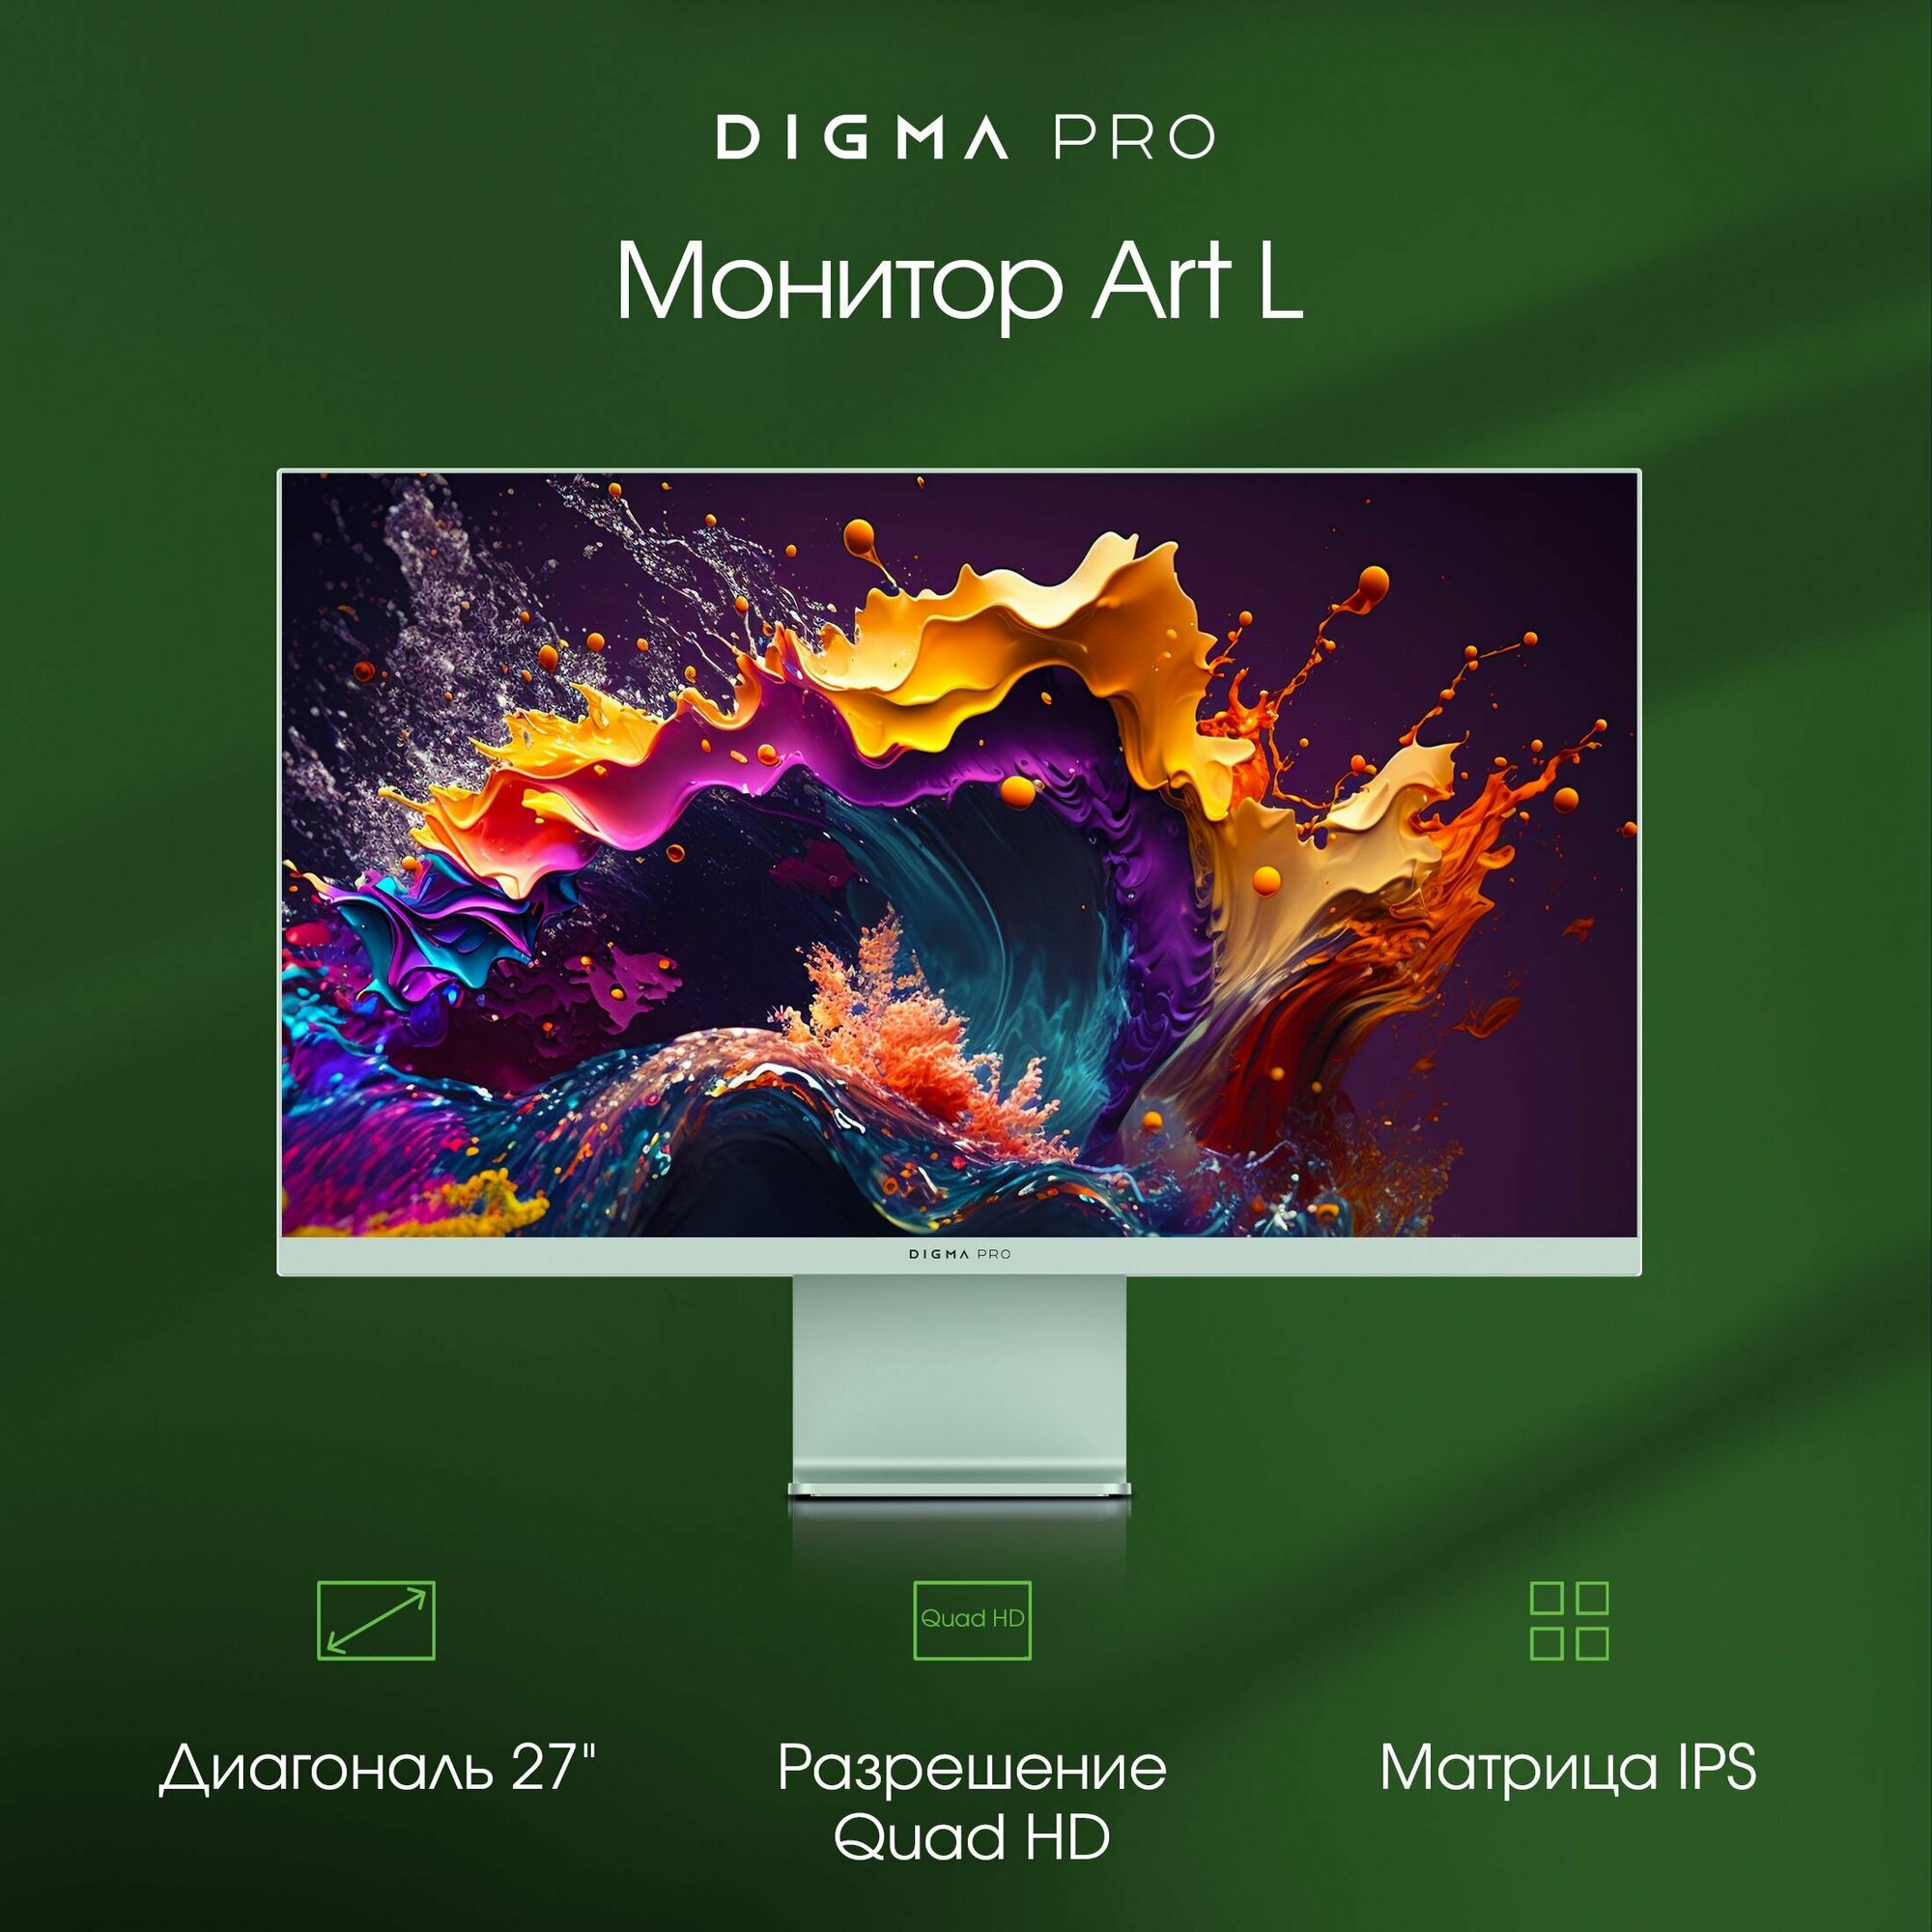 Игровой монитор Digma Pro 27" Art L 2560 1440 2K, с частотой165Гц, антибликовое покрытие, зеленый